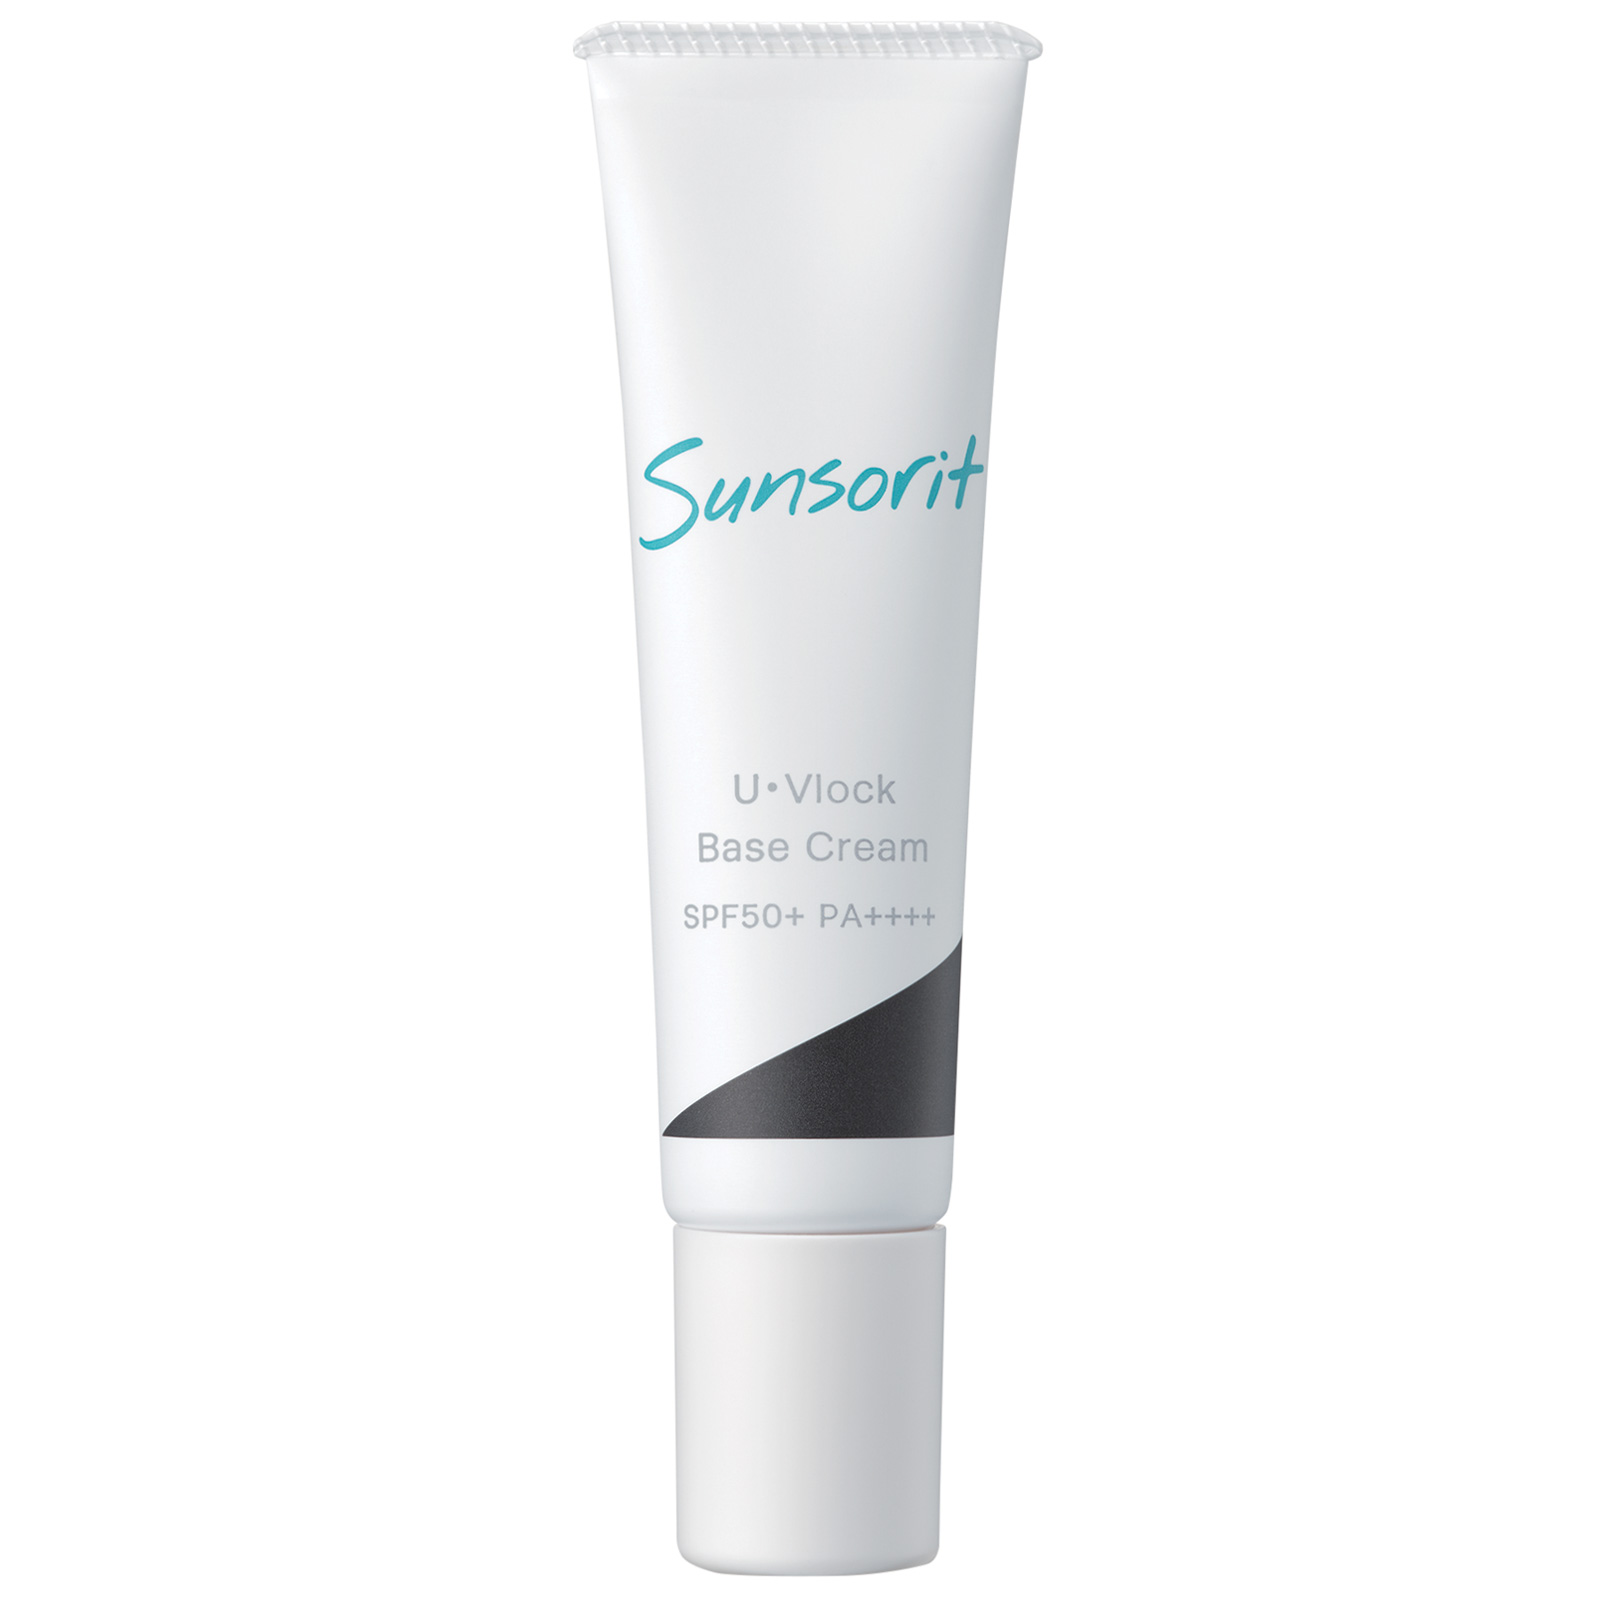 Sunsorit U Vlock Base Cream SPF 50+ PA++++. Солнцезащитный крем для лица Сансорит, 30 г